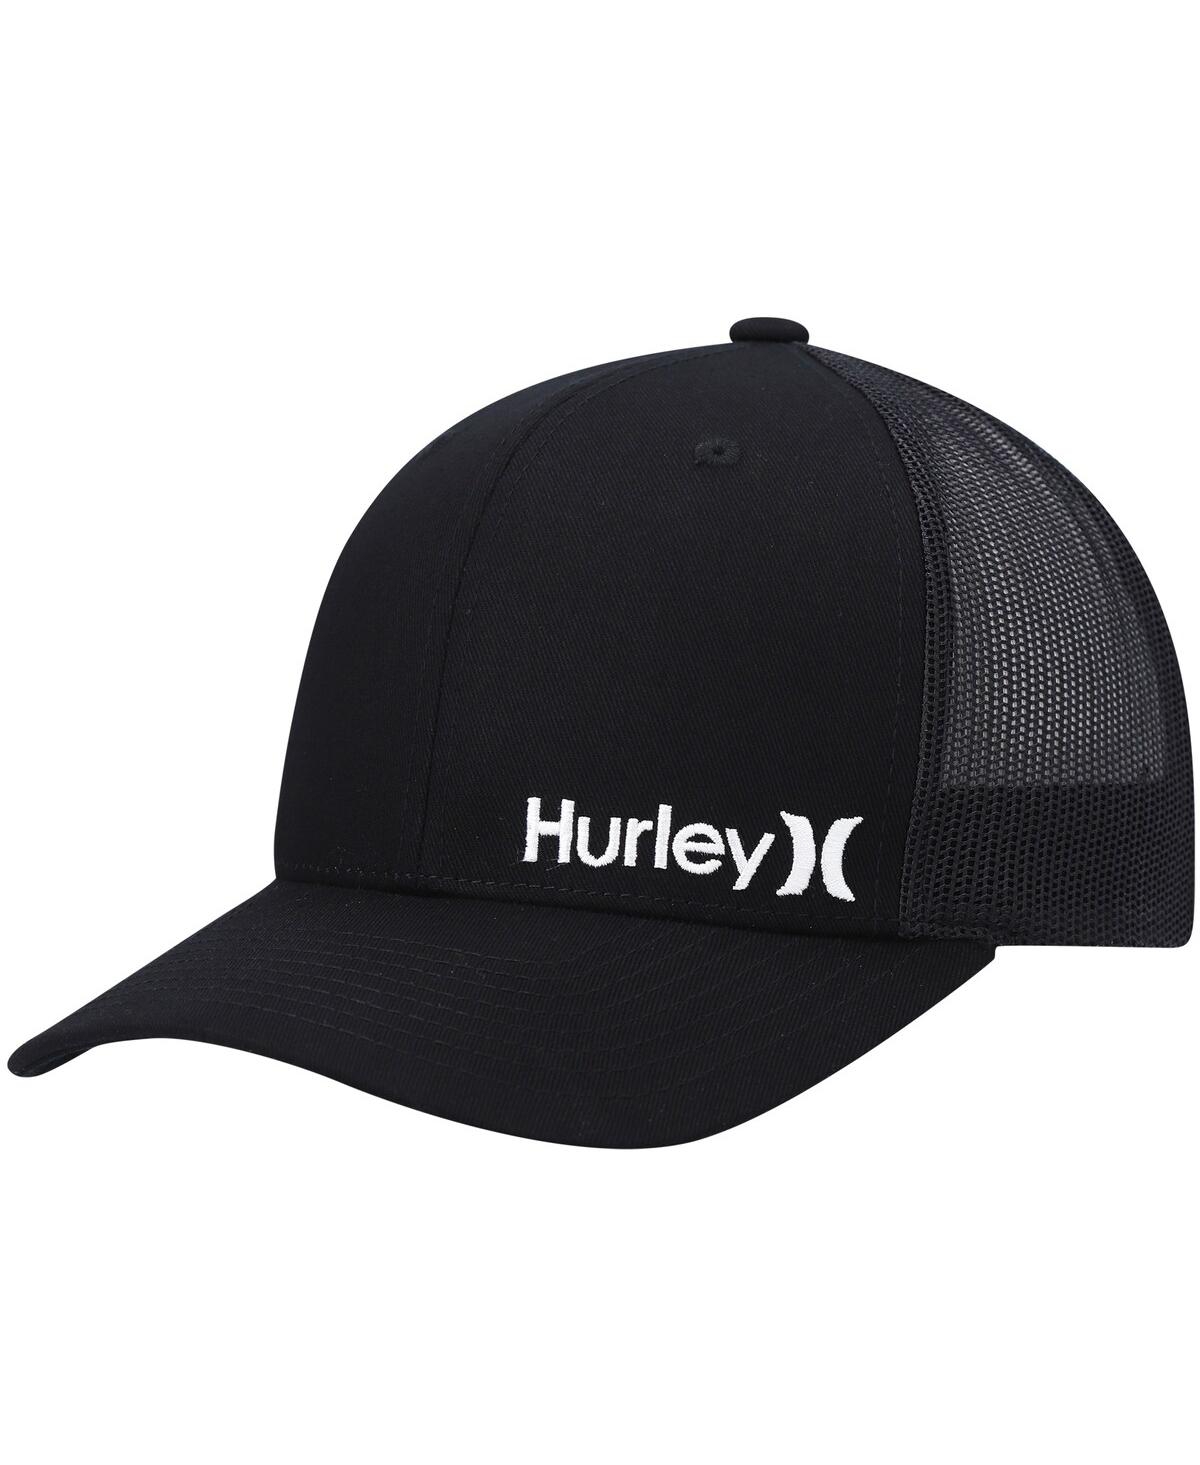 Hurley Corp Staple Trucker Baseball Cap In Black/black